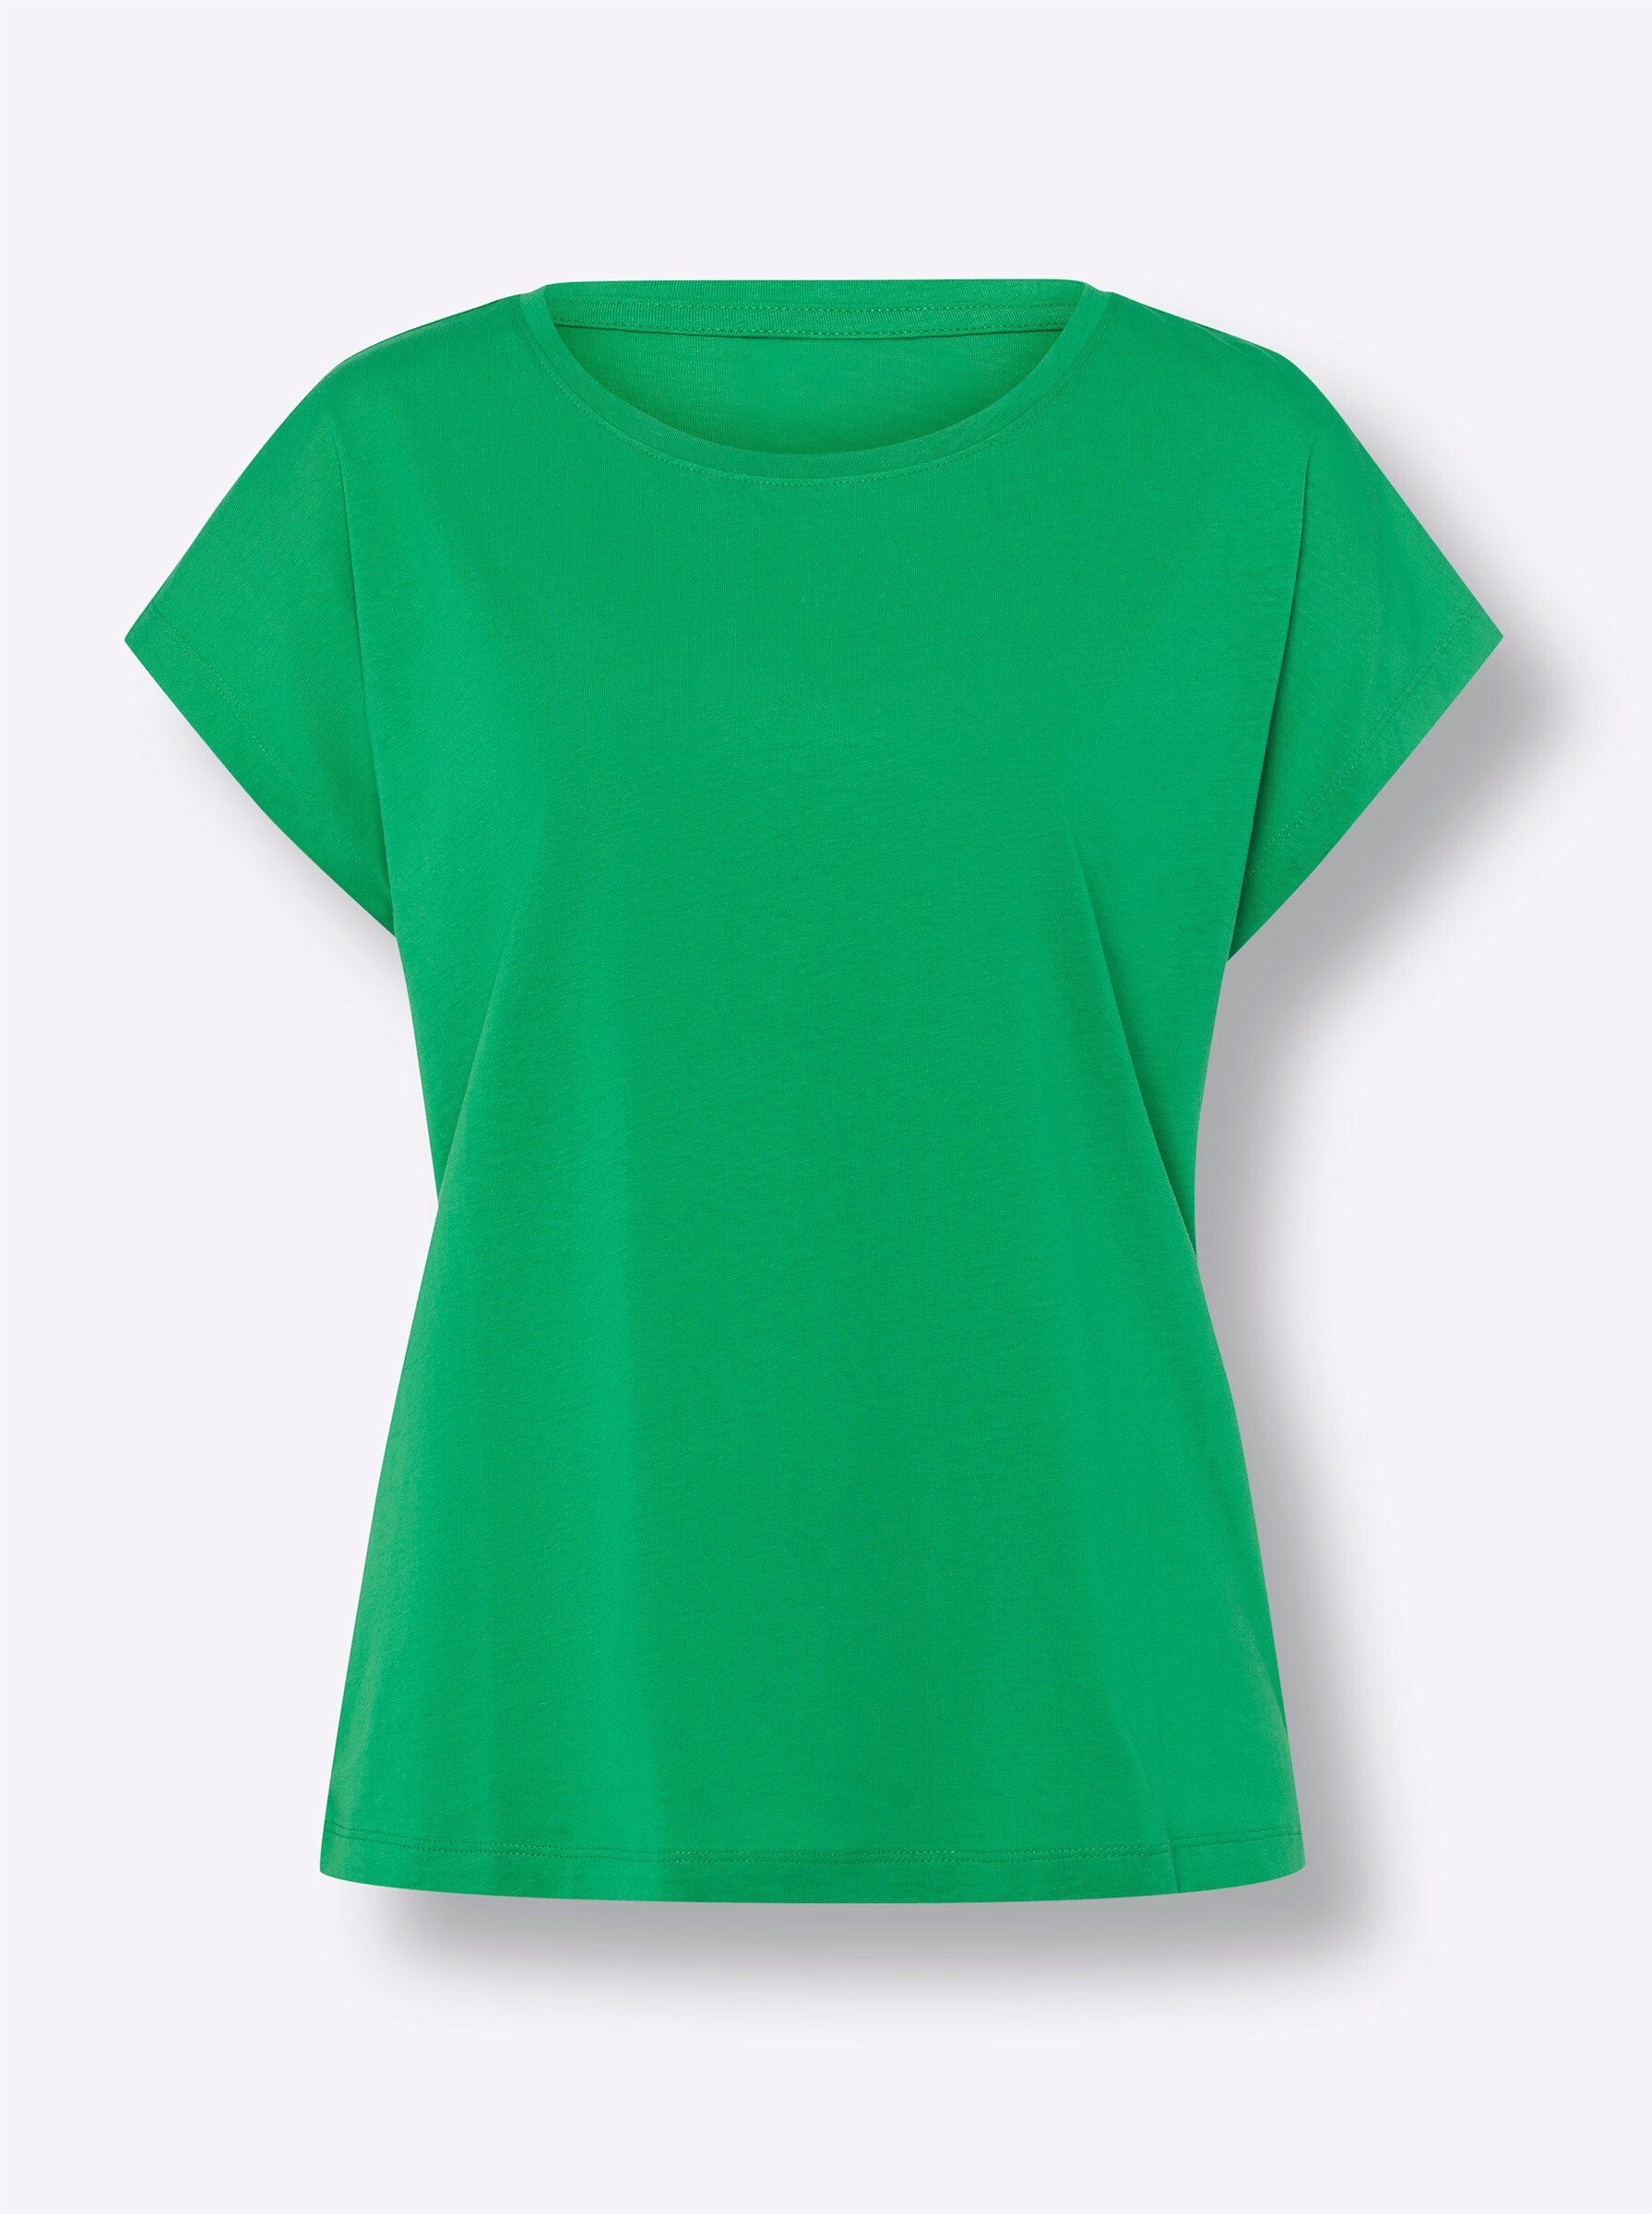 T-Shirt an! Sieh grasgrün